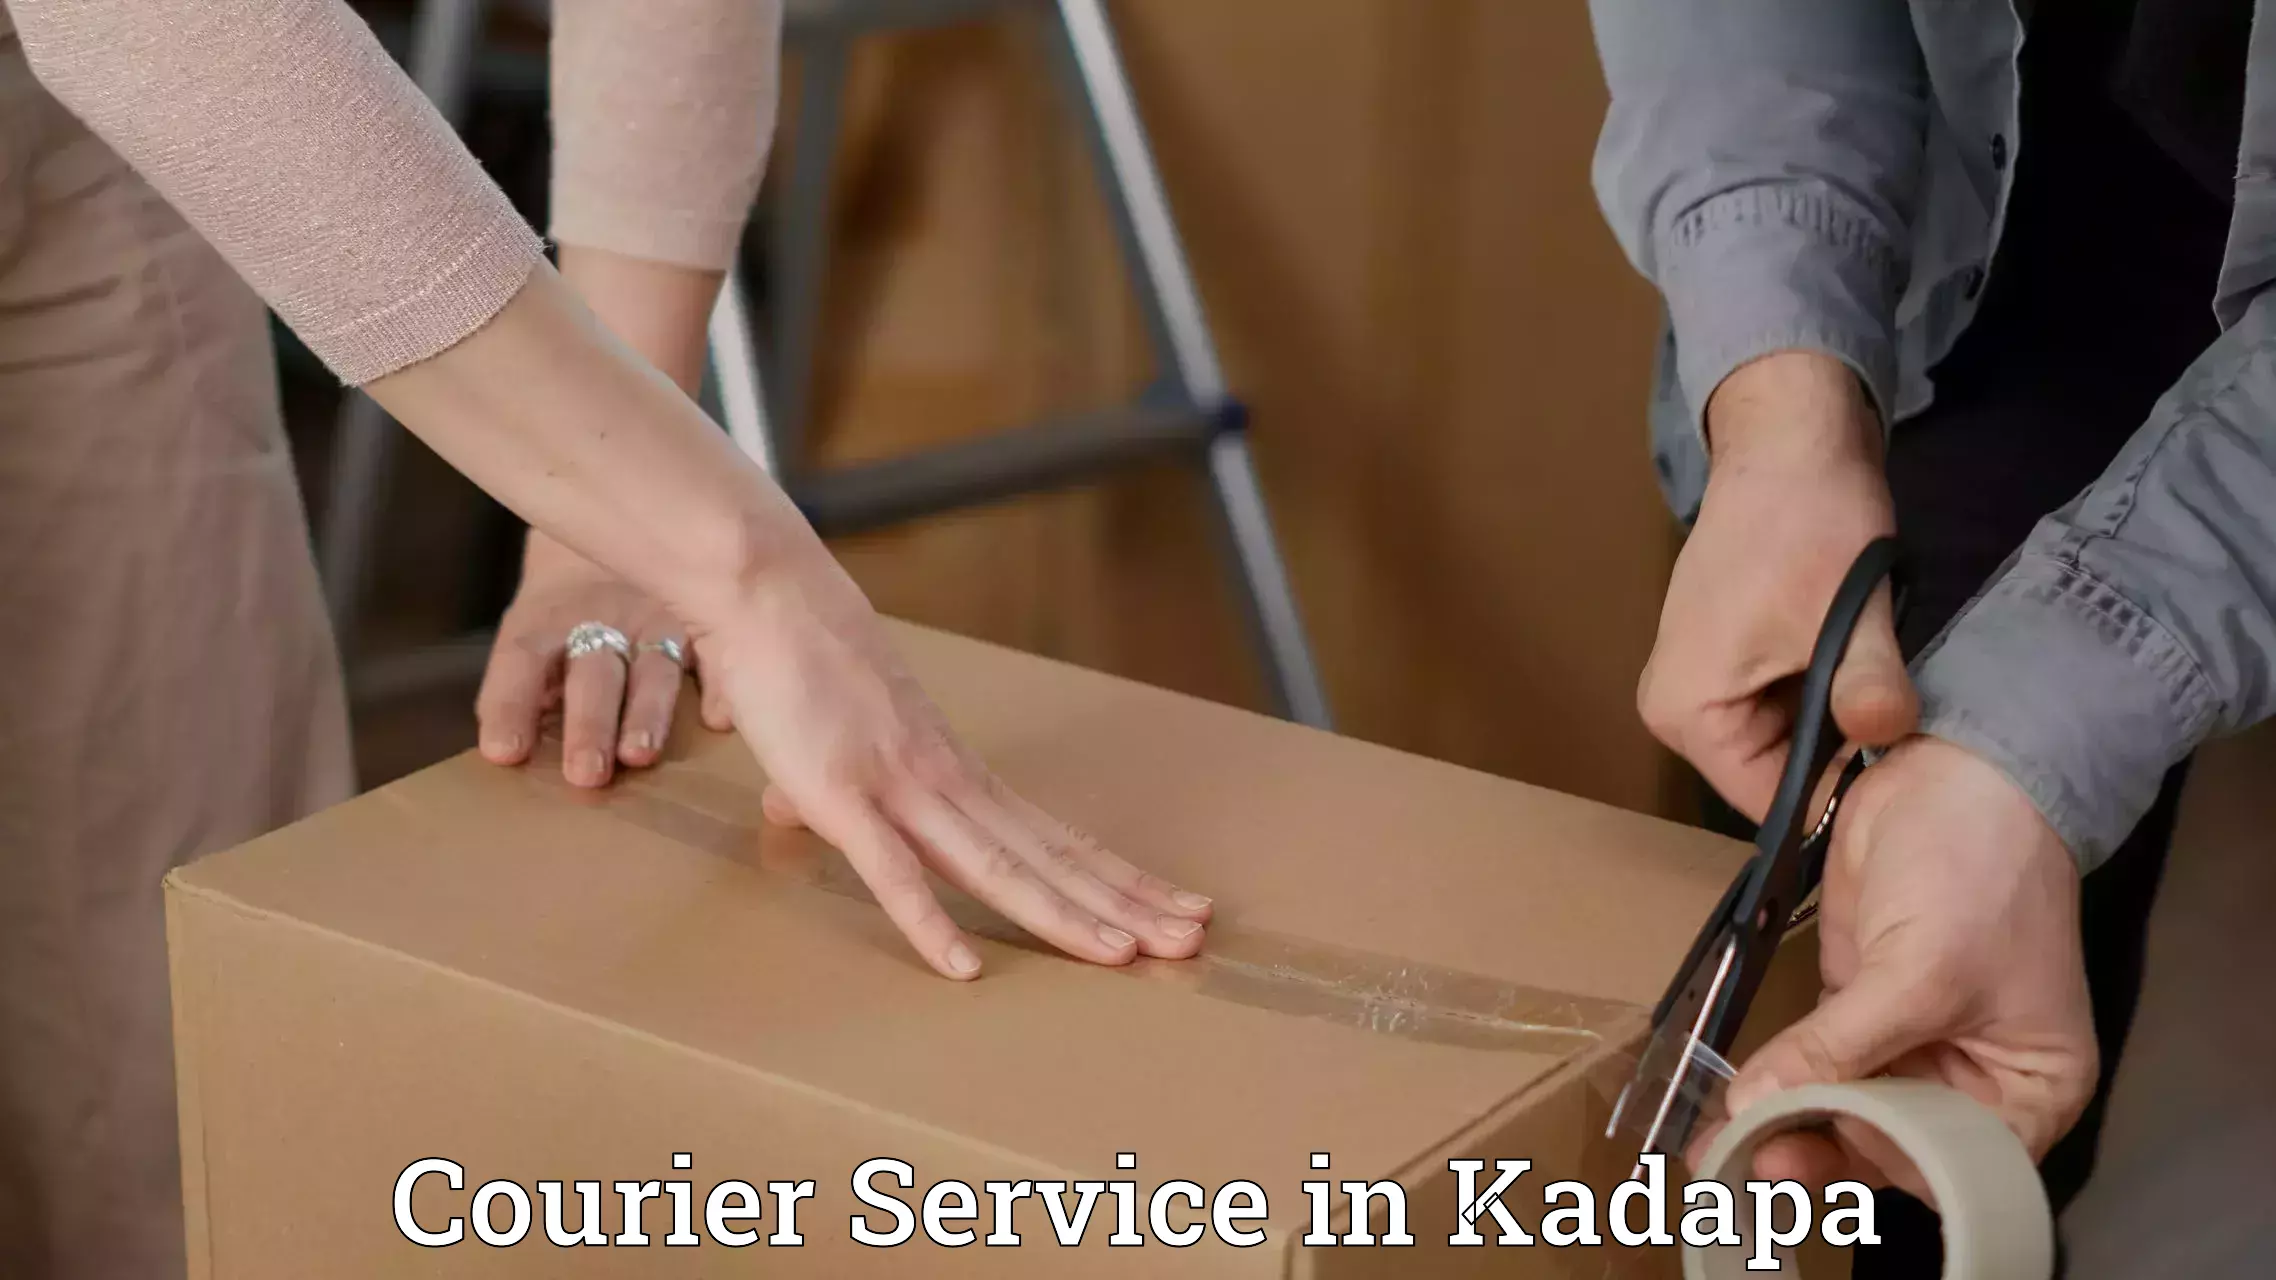 Courier service comparison in Kadapa